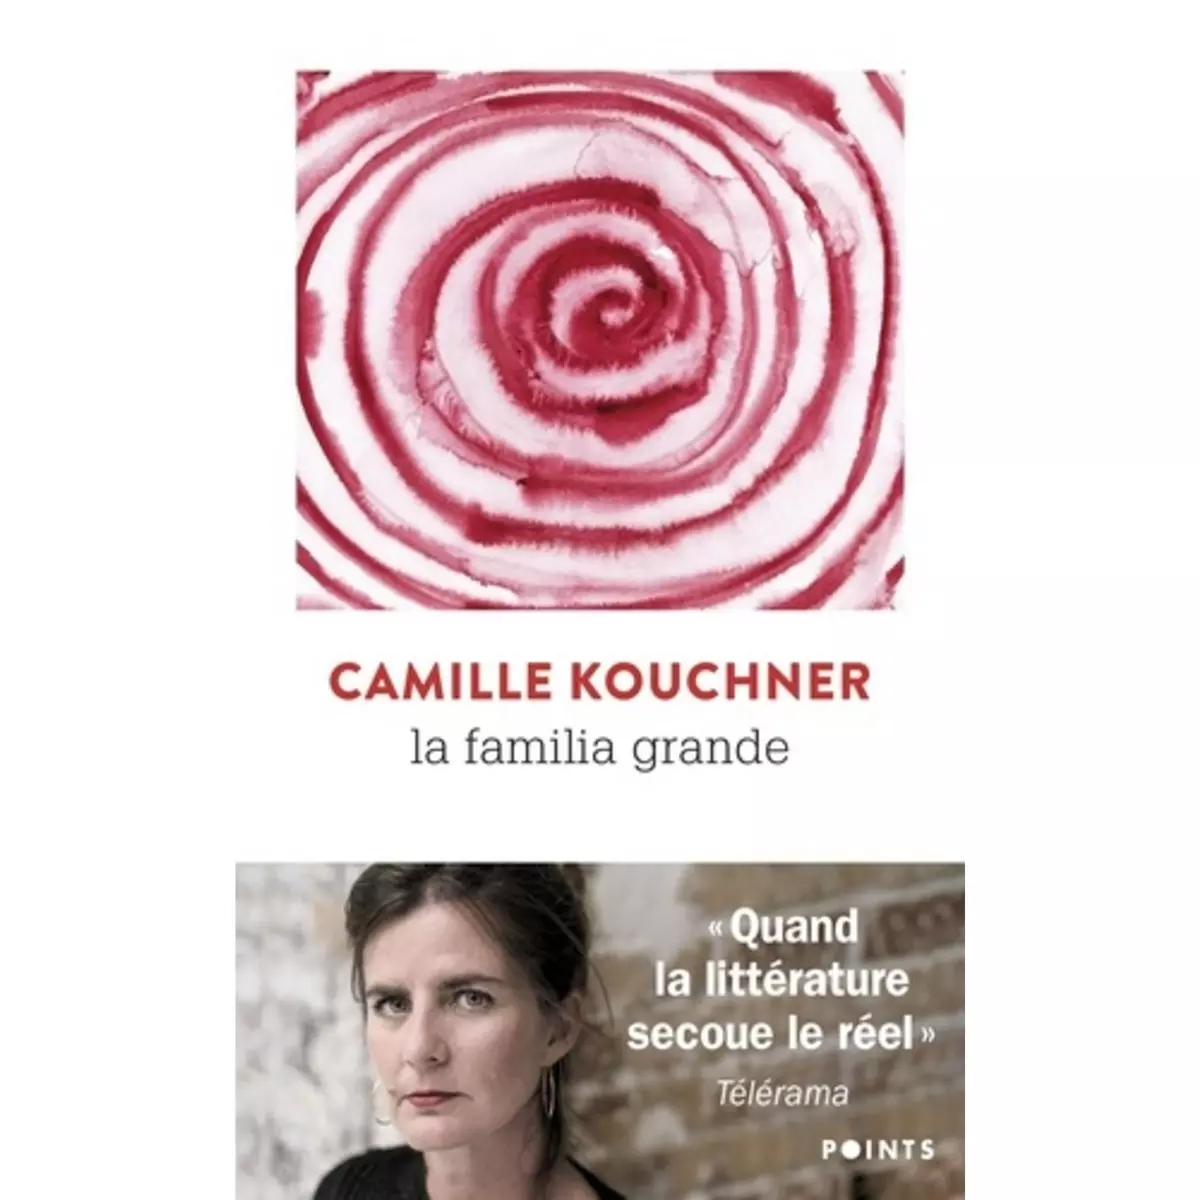  LA FAMILIA GRANDE, Kouchner Camille